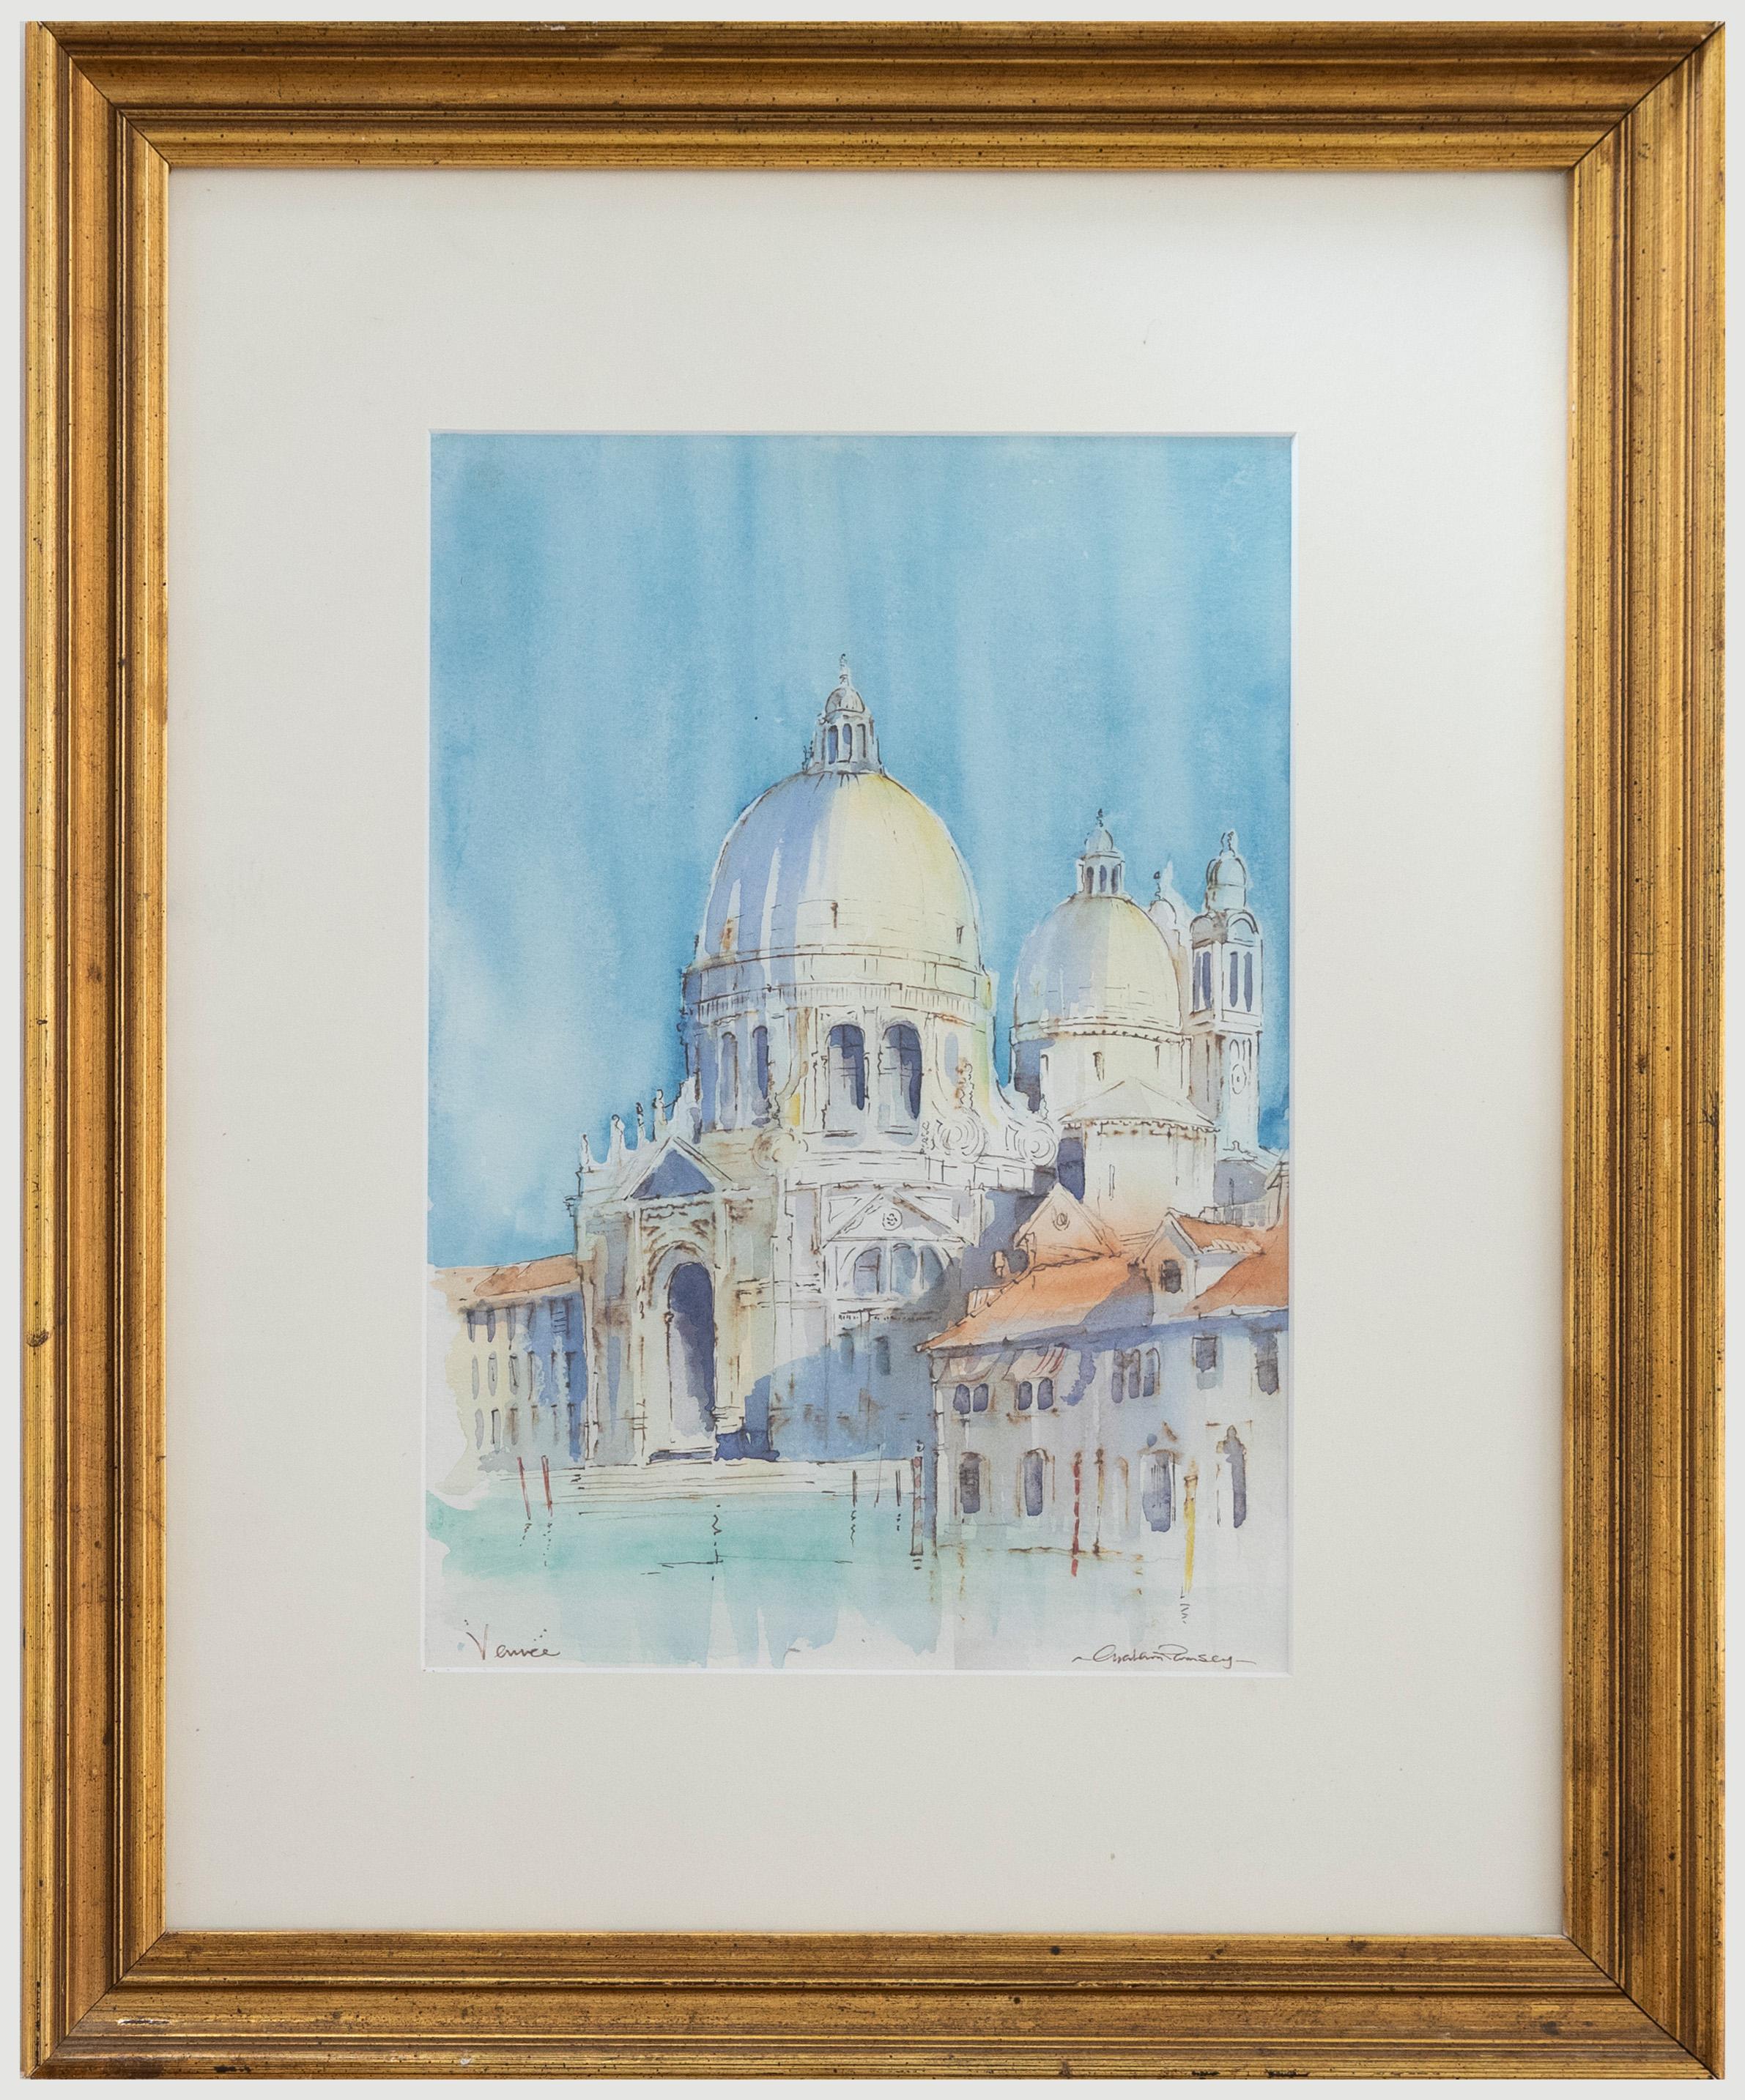 Vom Künstler signiert und am unteren Rand mit "Venice" bezeichnet. Gut präsentiert in einem frischen weißen Passepartout und einem vergoldeten Holzrahmen. Auf Aquarellpapier.